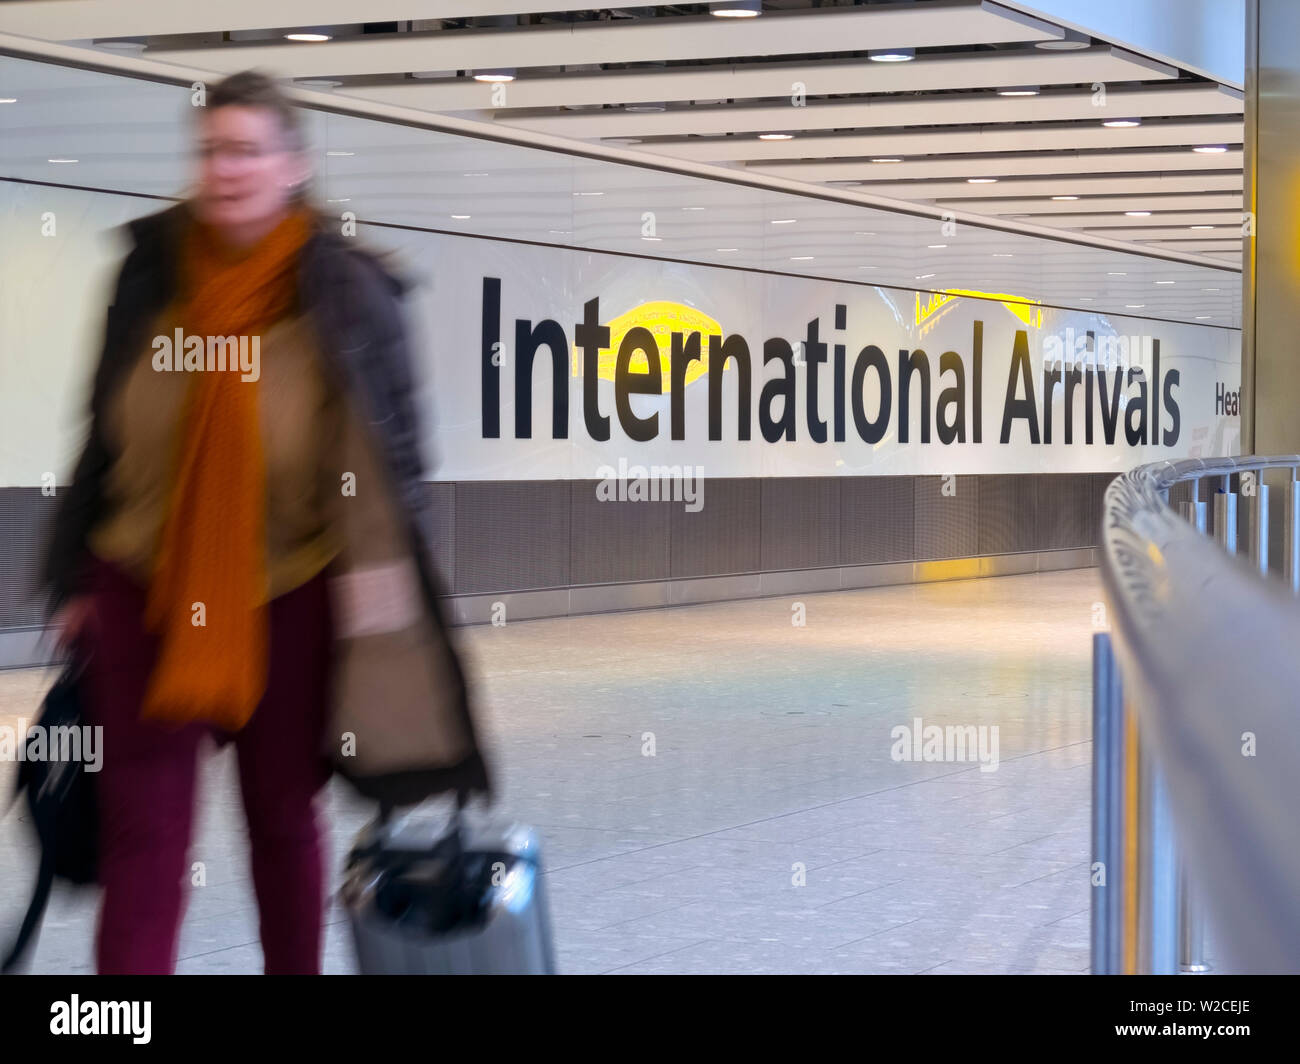 Reino Unido, Inglaterra, Londres, el aeropuerto de Heathrow Terminal 5, Llegadas Internacionales Foto de stock